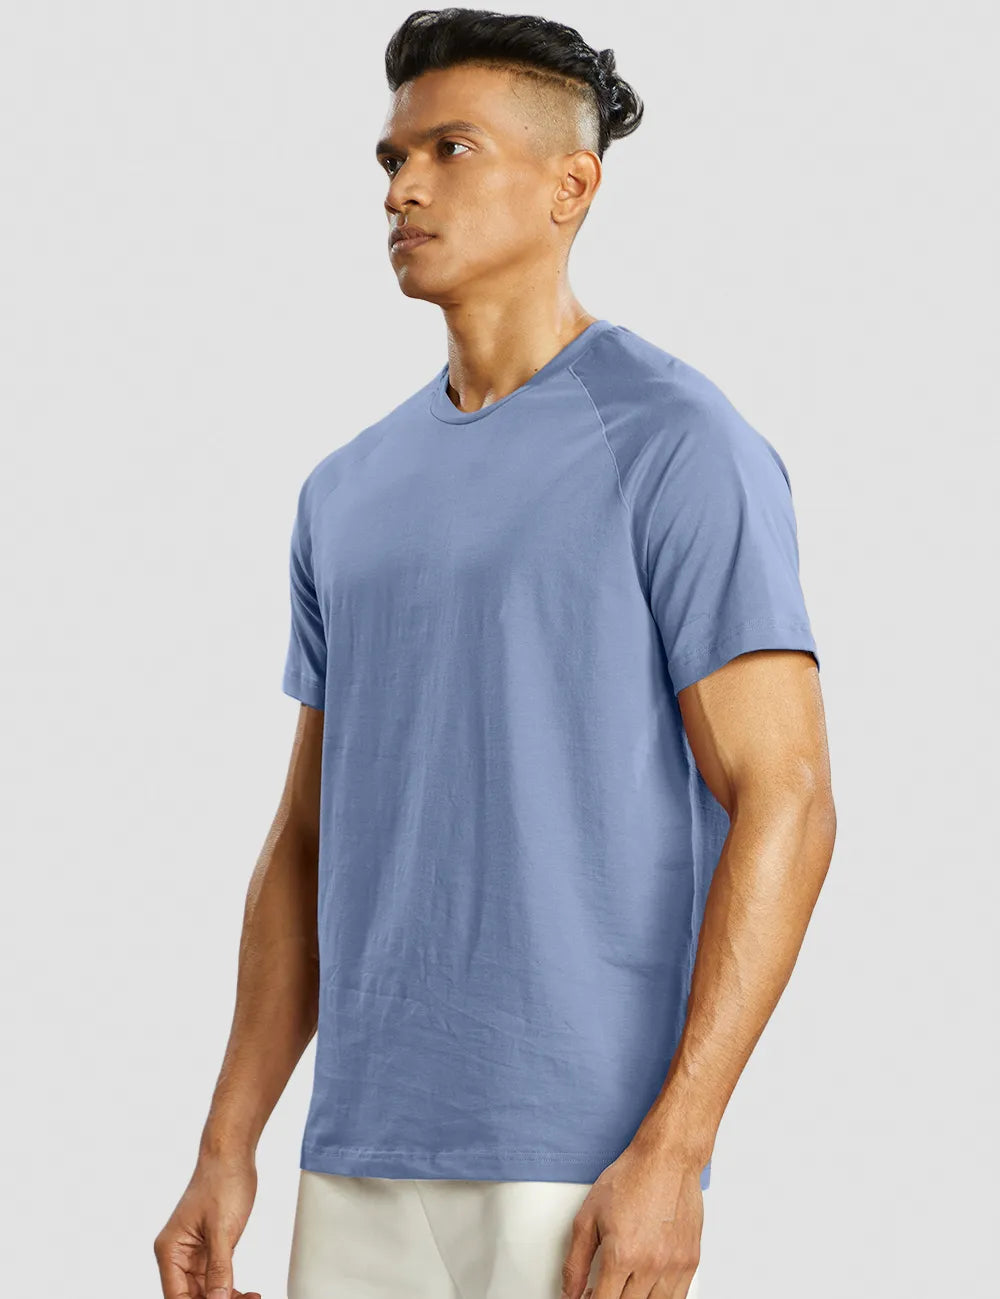 Muscle Fit T-shirt Men - Blue